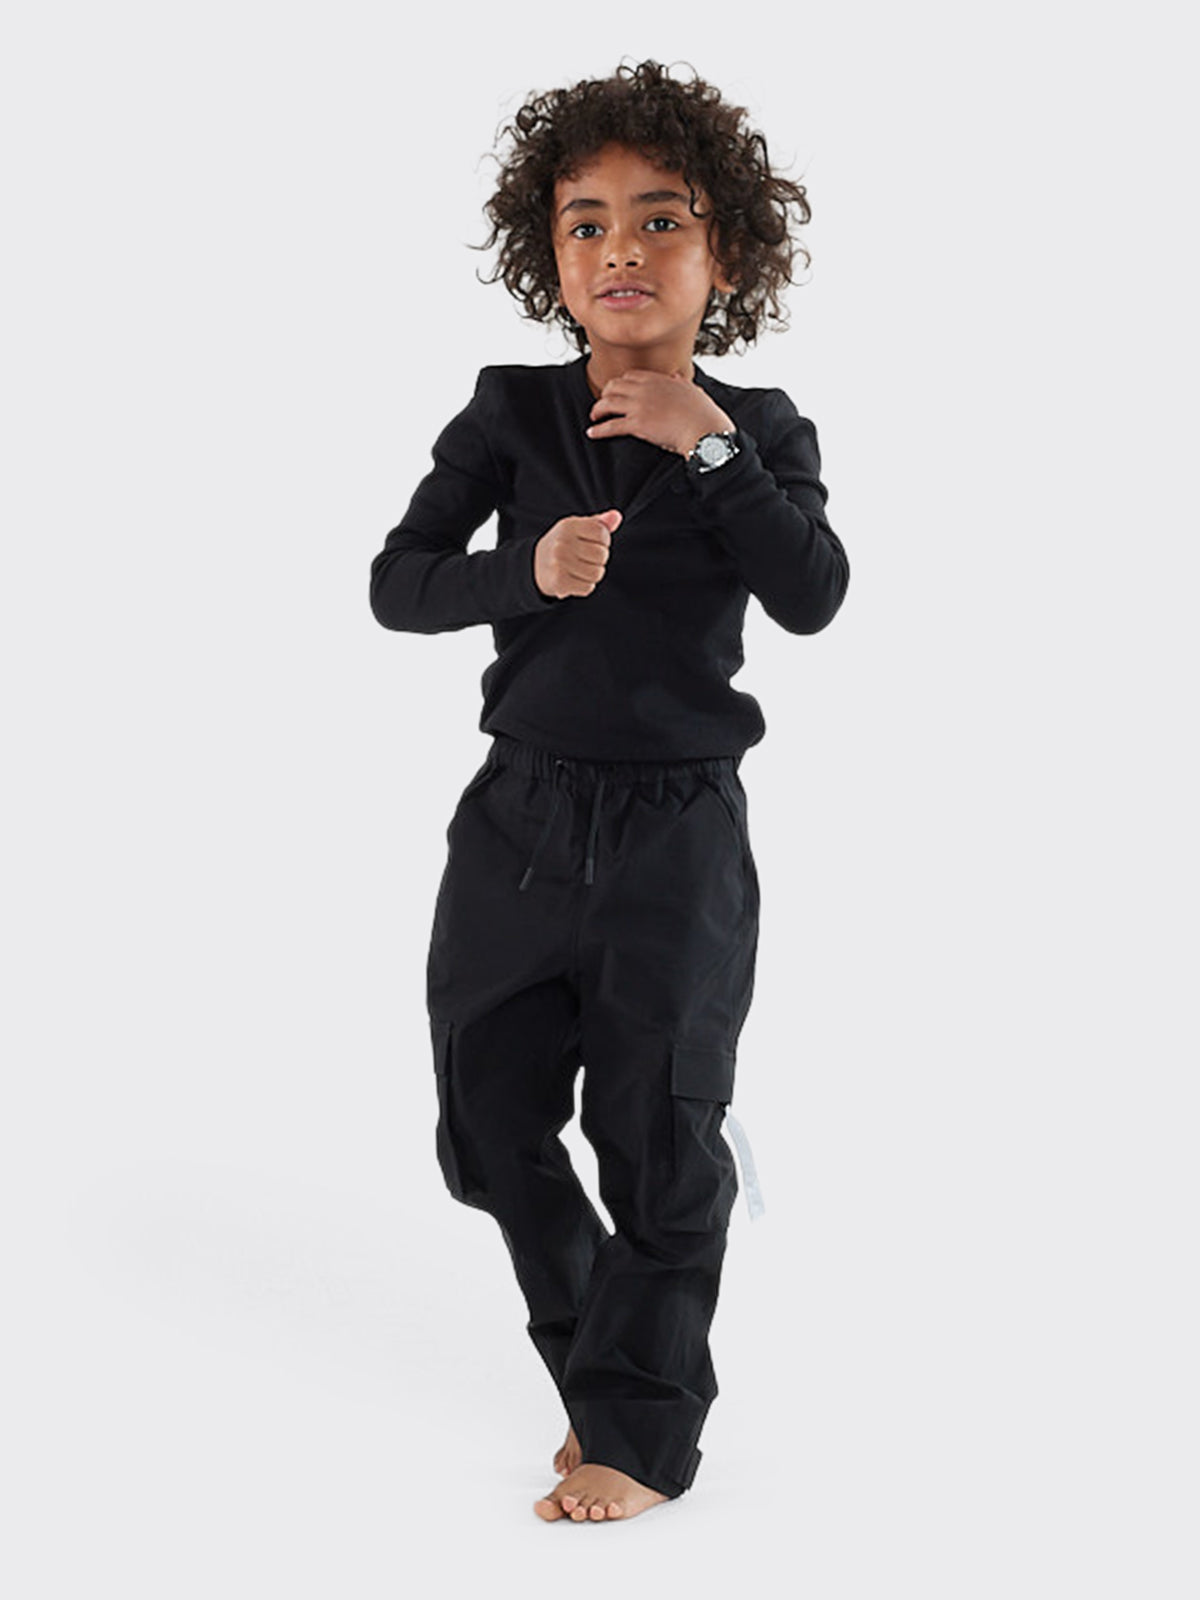 Kid wearing Giske mini from Blæst in Black